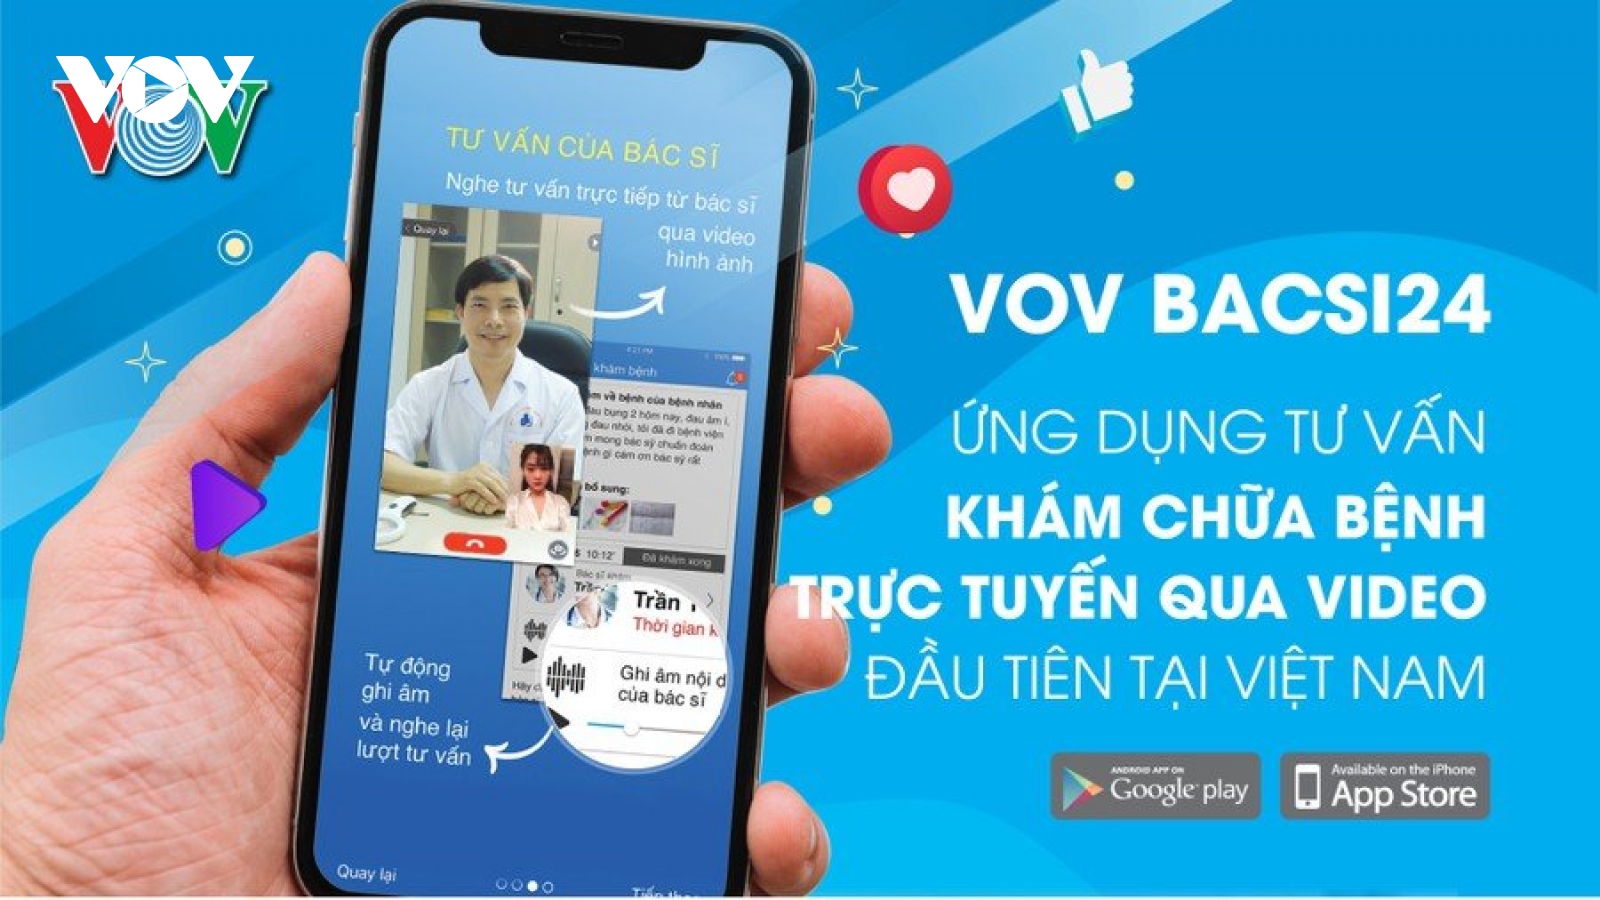 VOV Bacsi24: Bác sĩ của mỗi người dân Việt